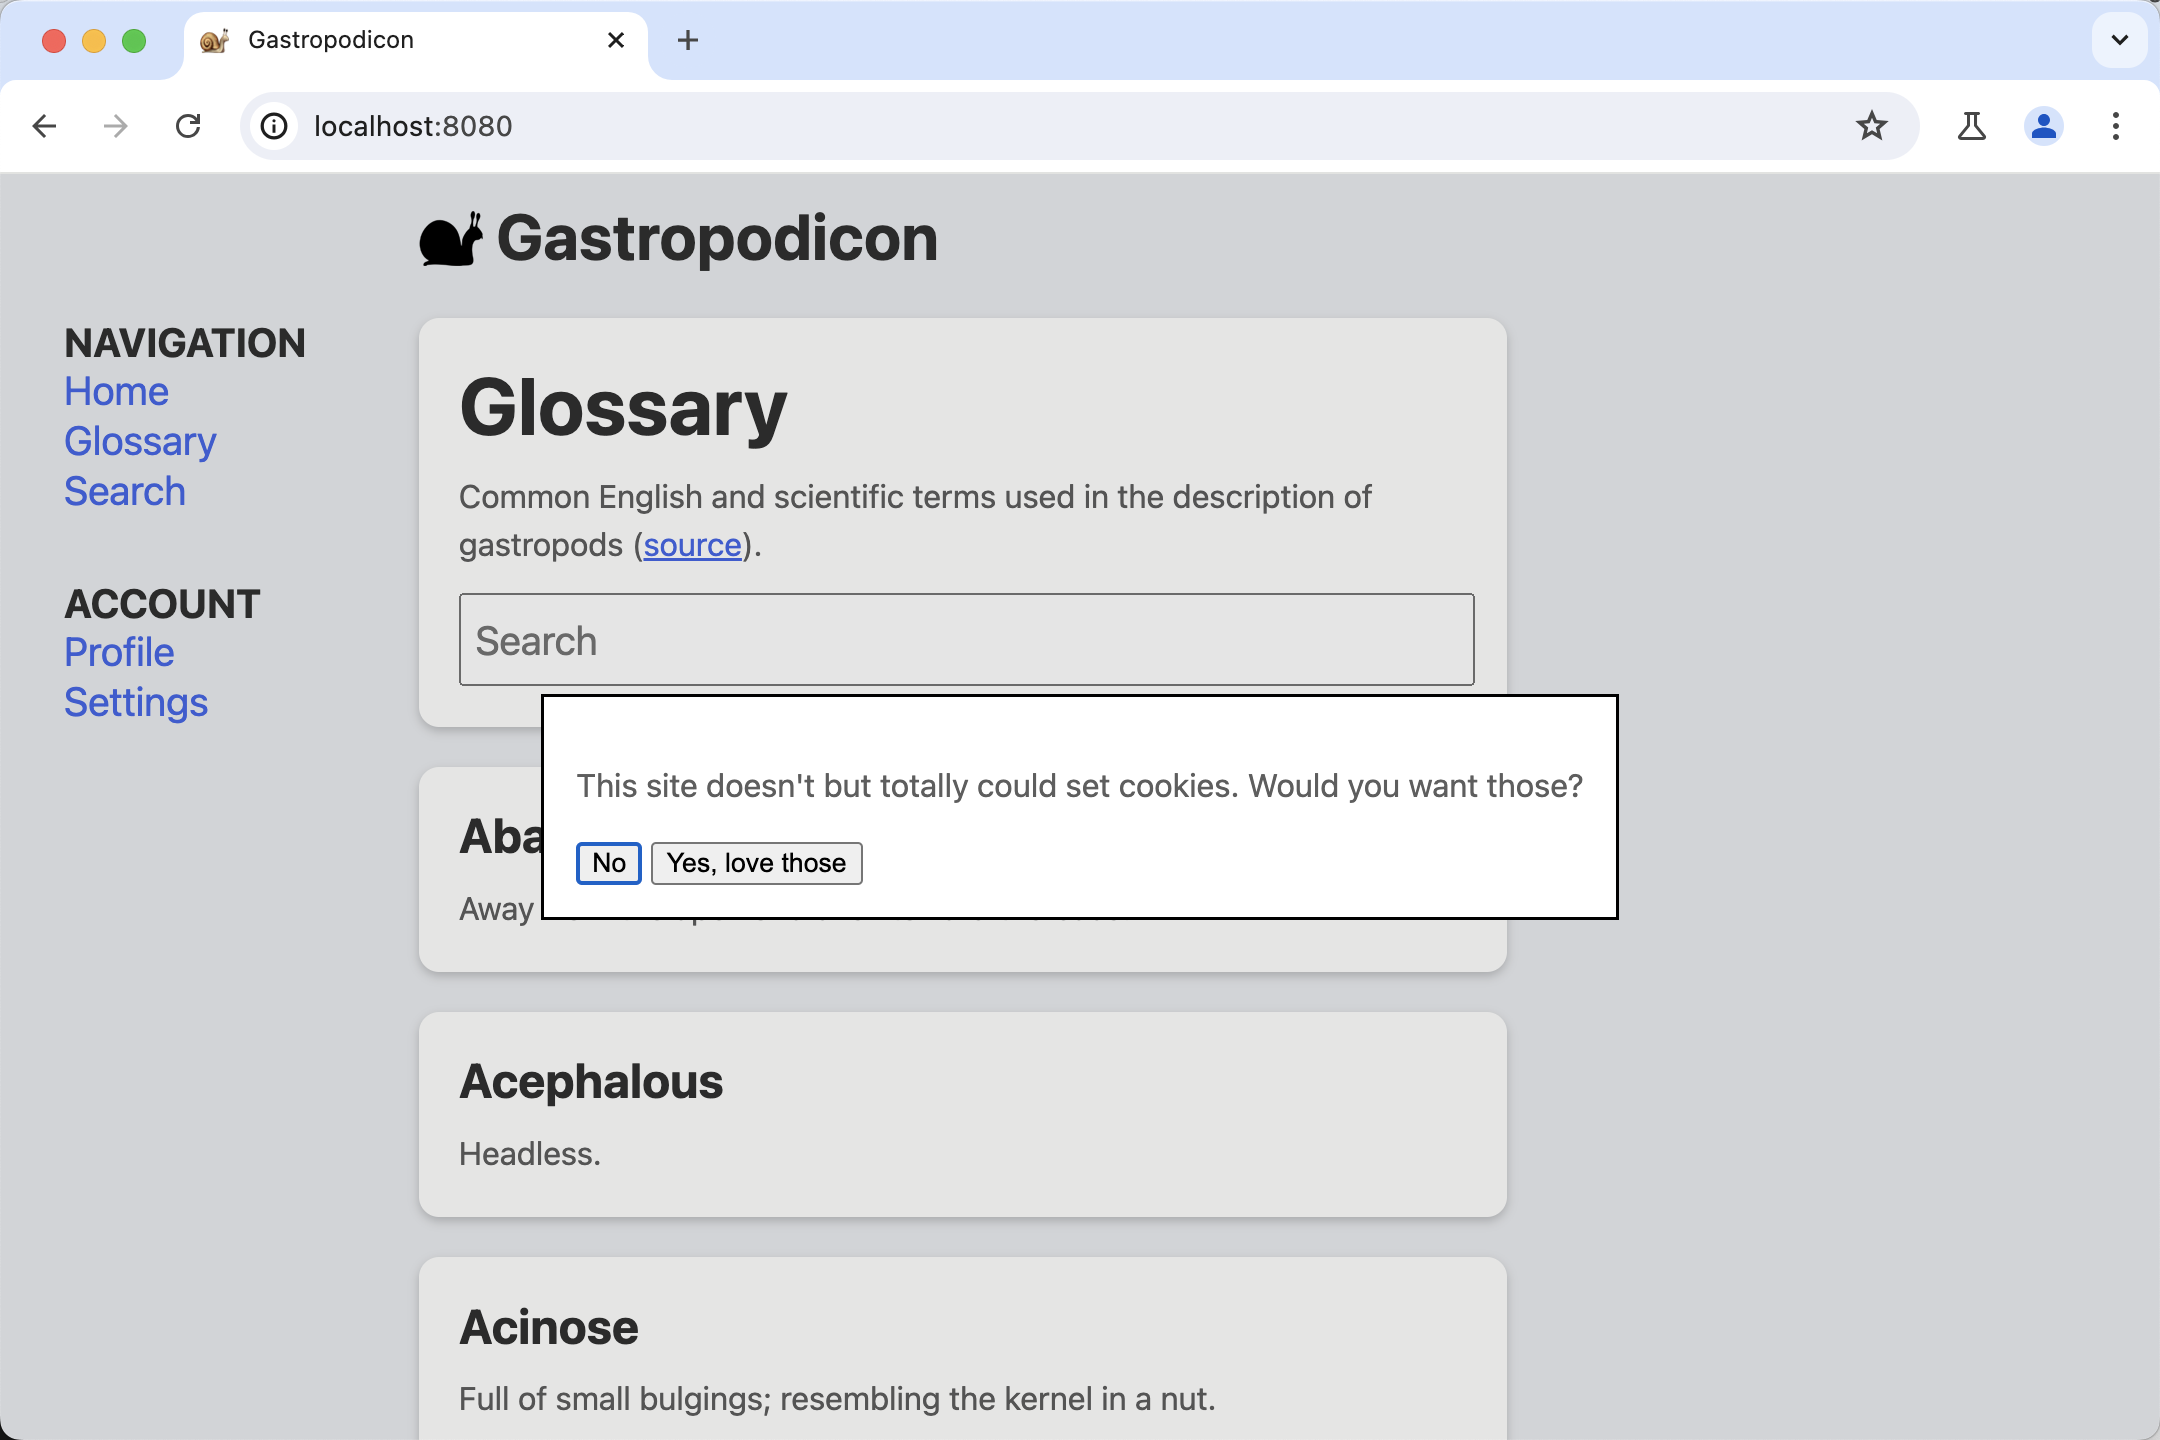 צילום מסך של דף ההדגמה של Gastropodicon